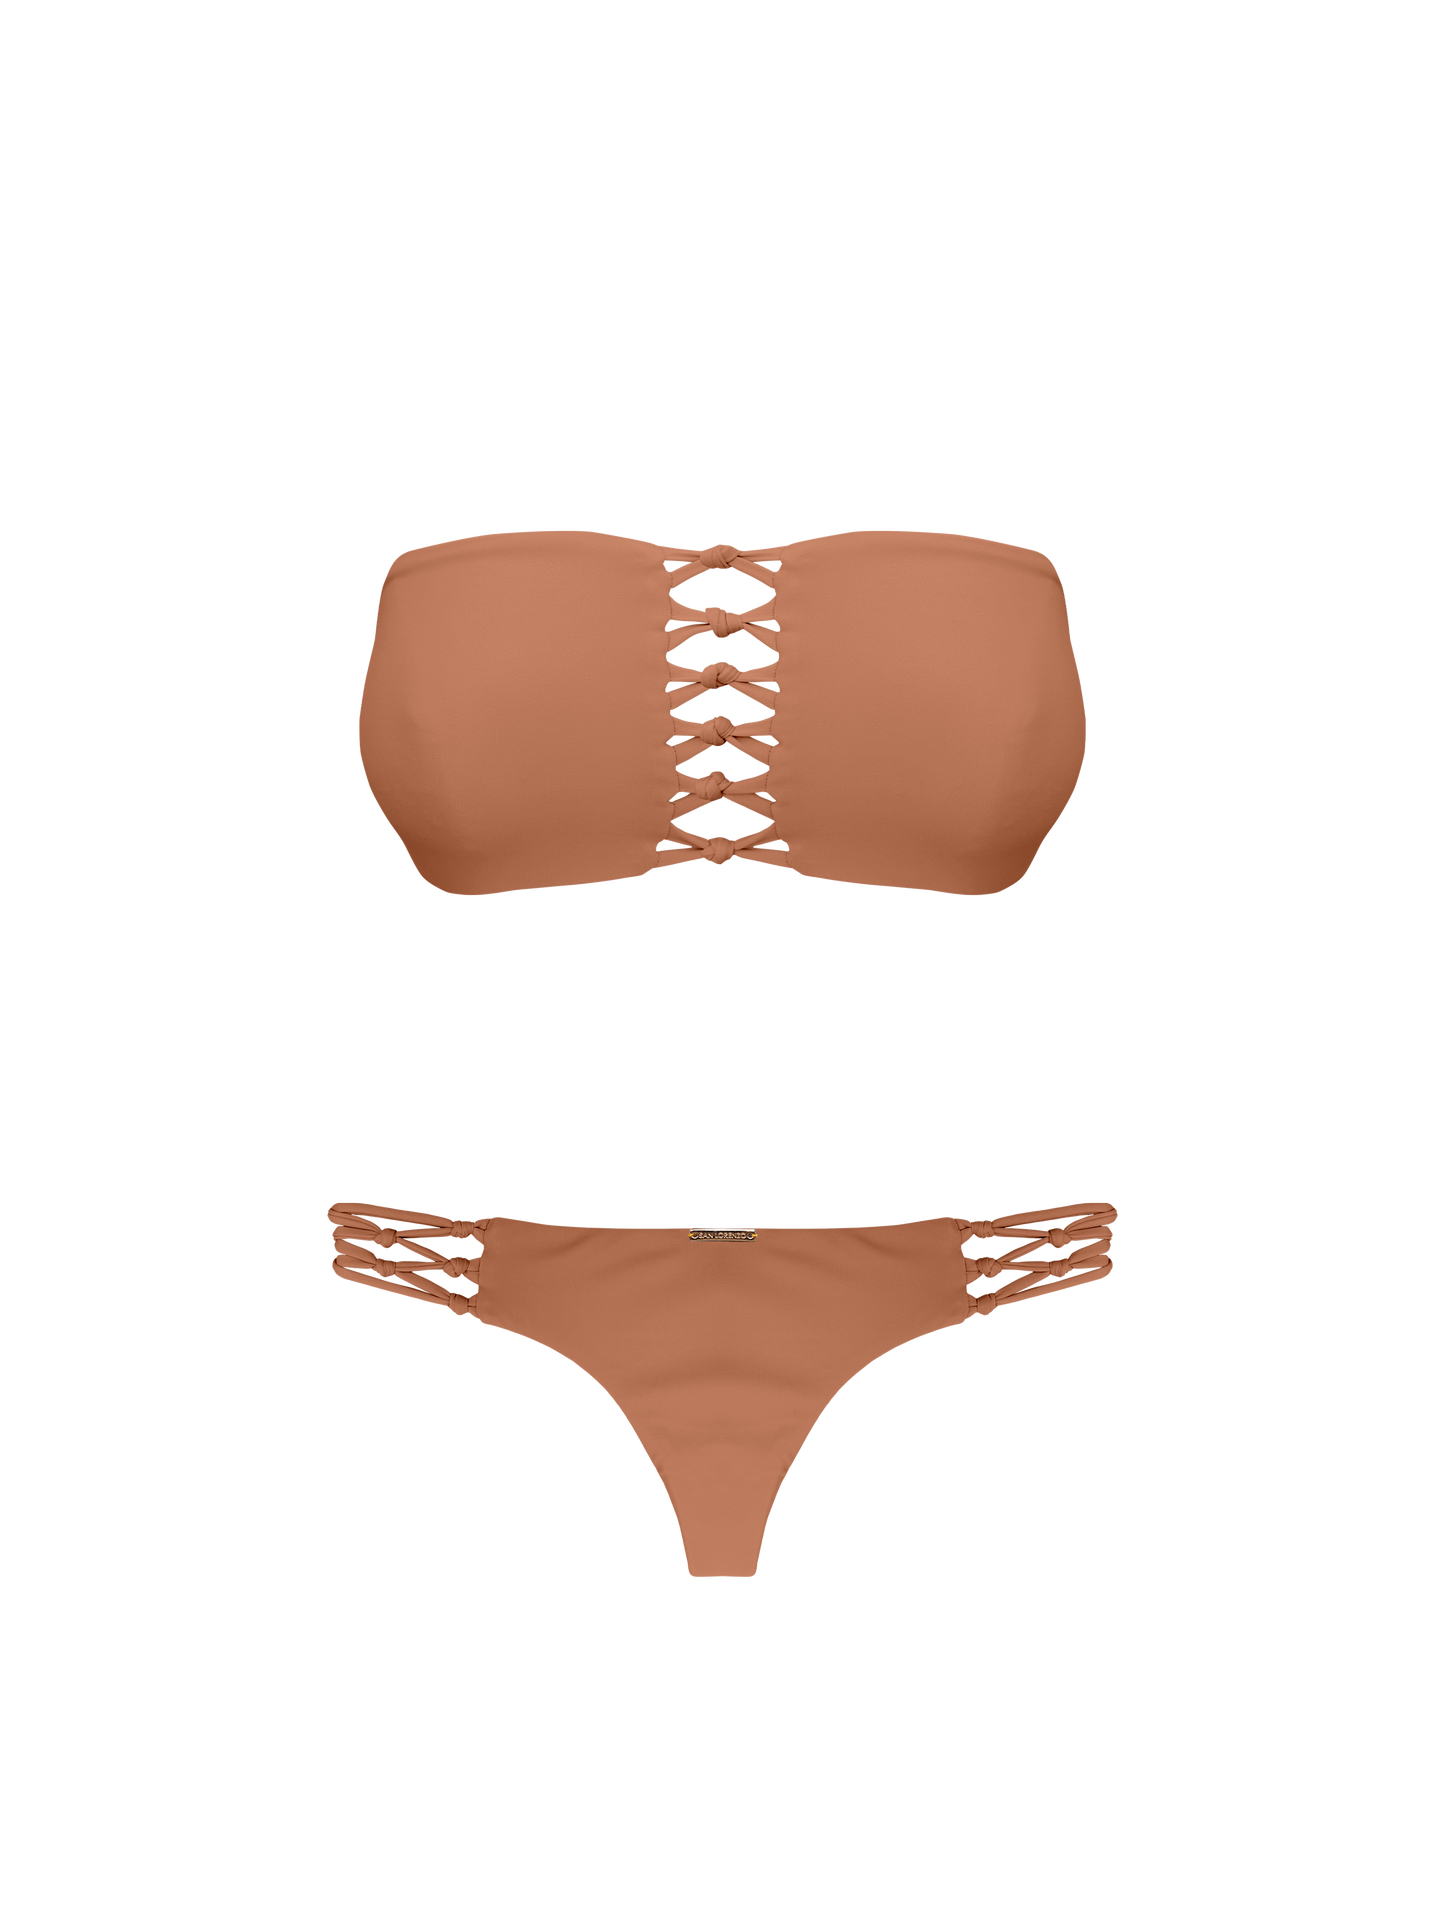 Coral Dune Sunset Braided Thong Bikini Bottom